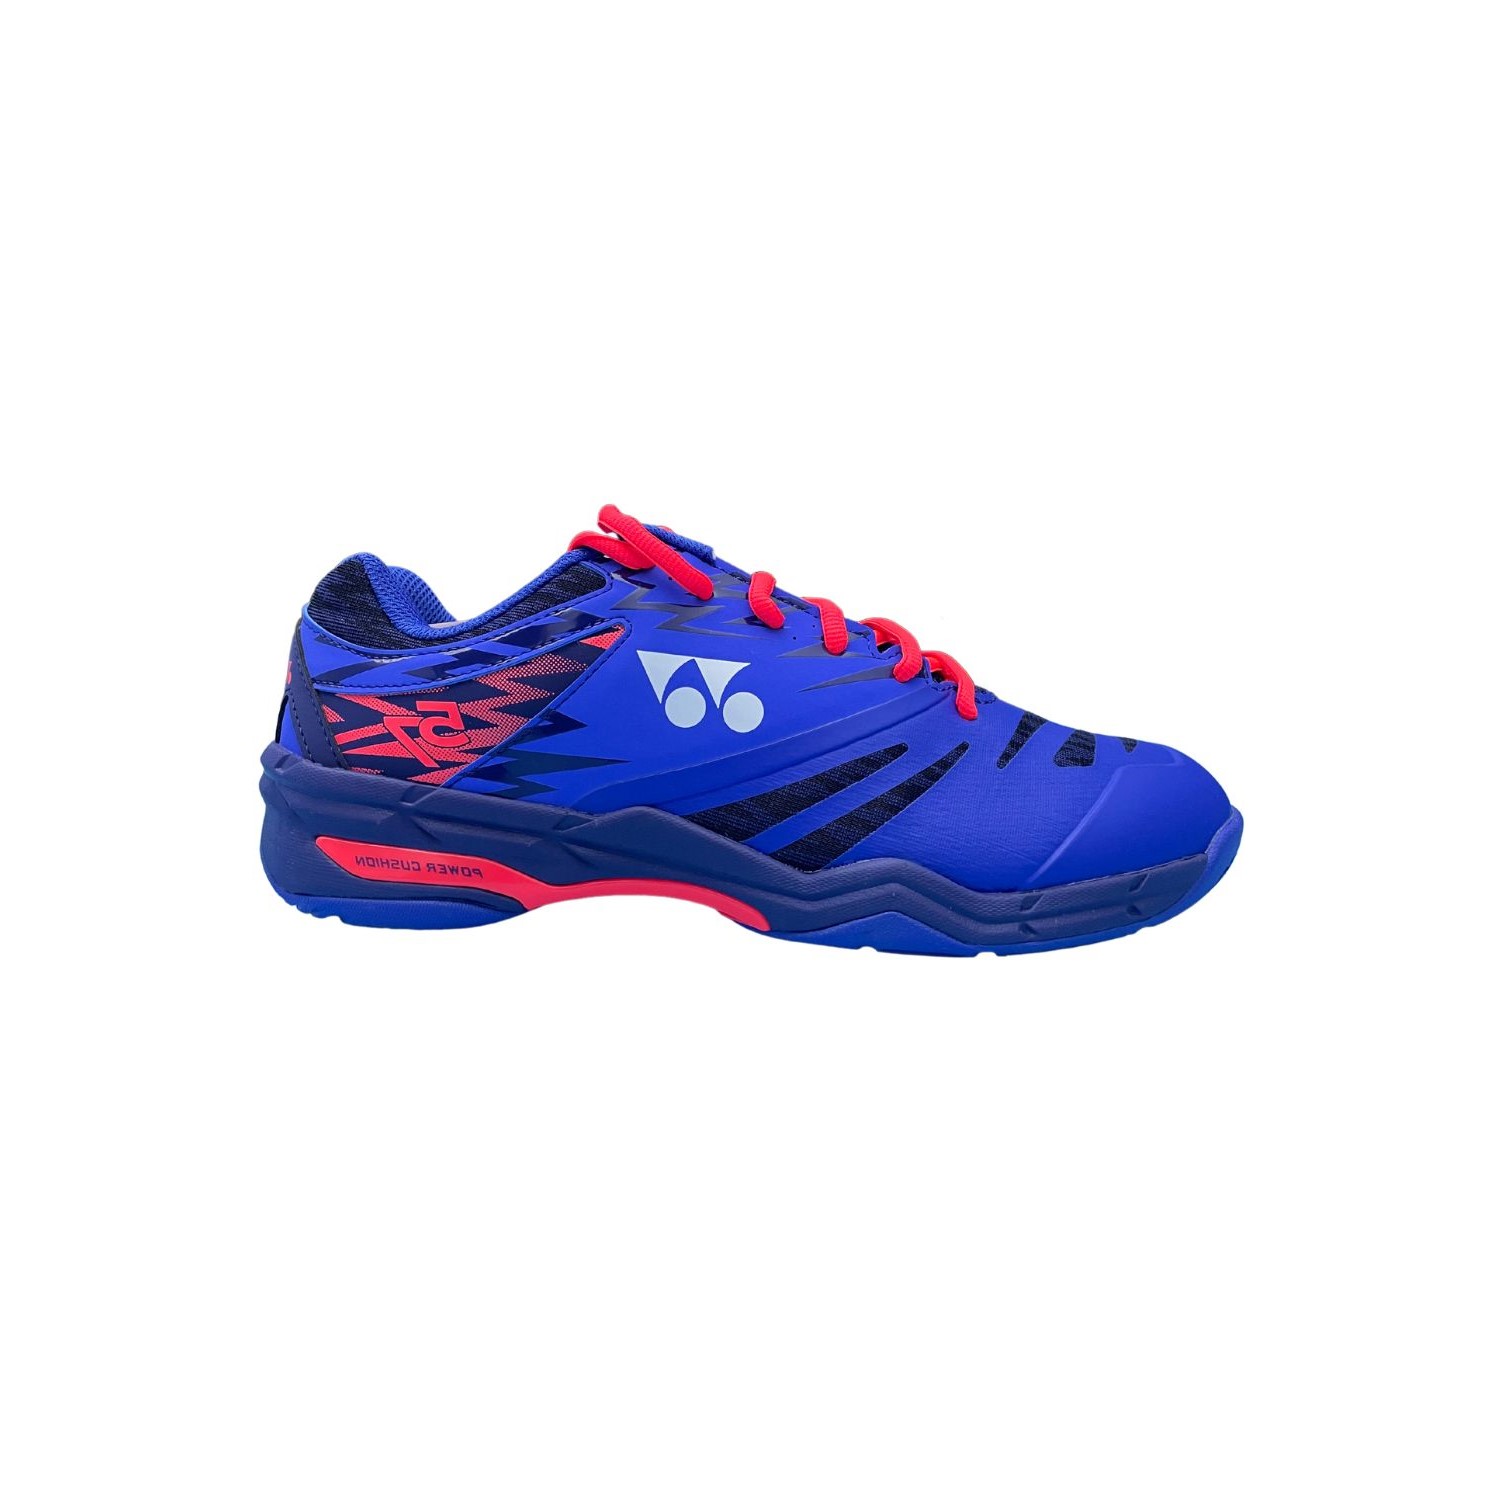 Zapatillas De Interior Yonex Power Cushion 57 - Zapatillas para Badminton/Squash  MKP